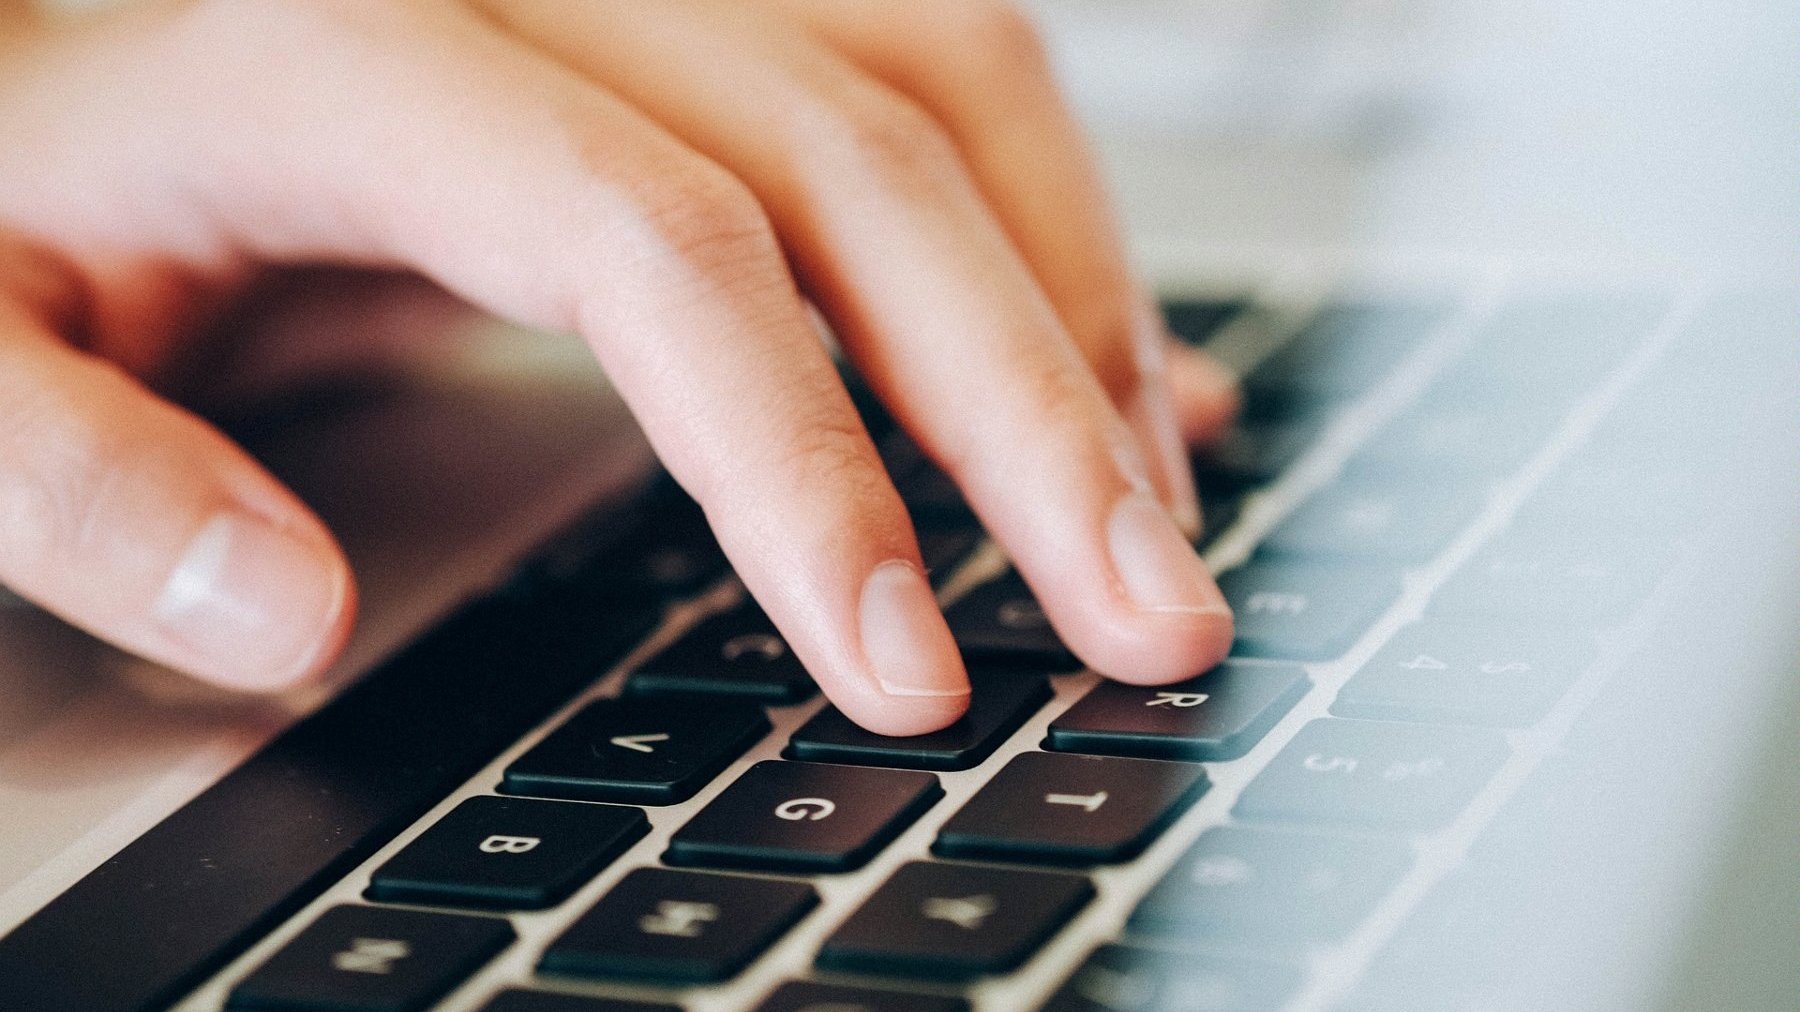 Zdjęcie przedstawia rękę piszącą na klawiaturze laptopa.